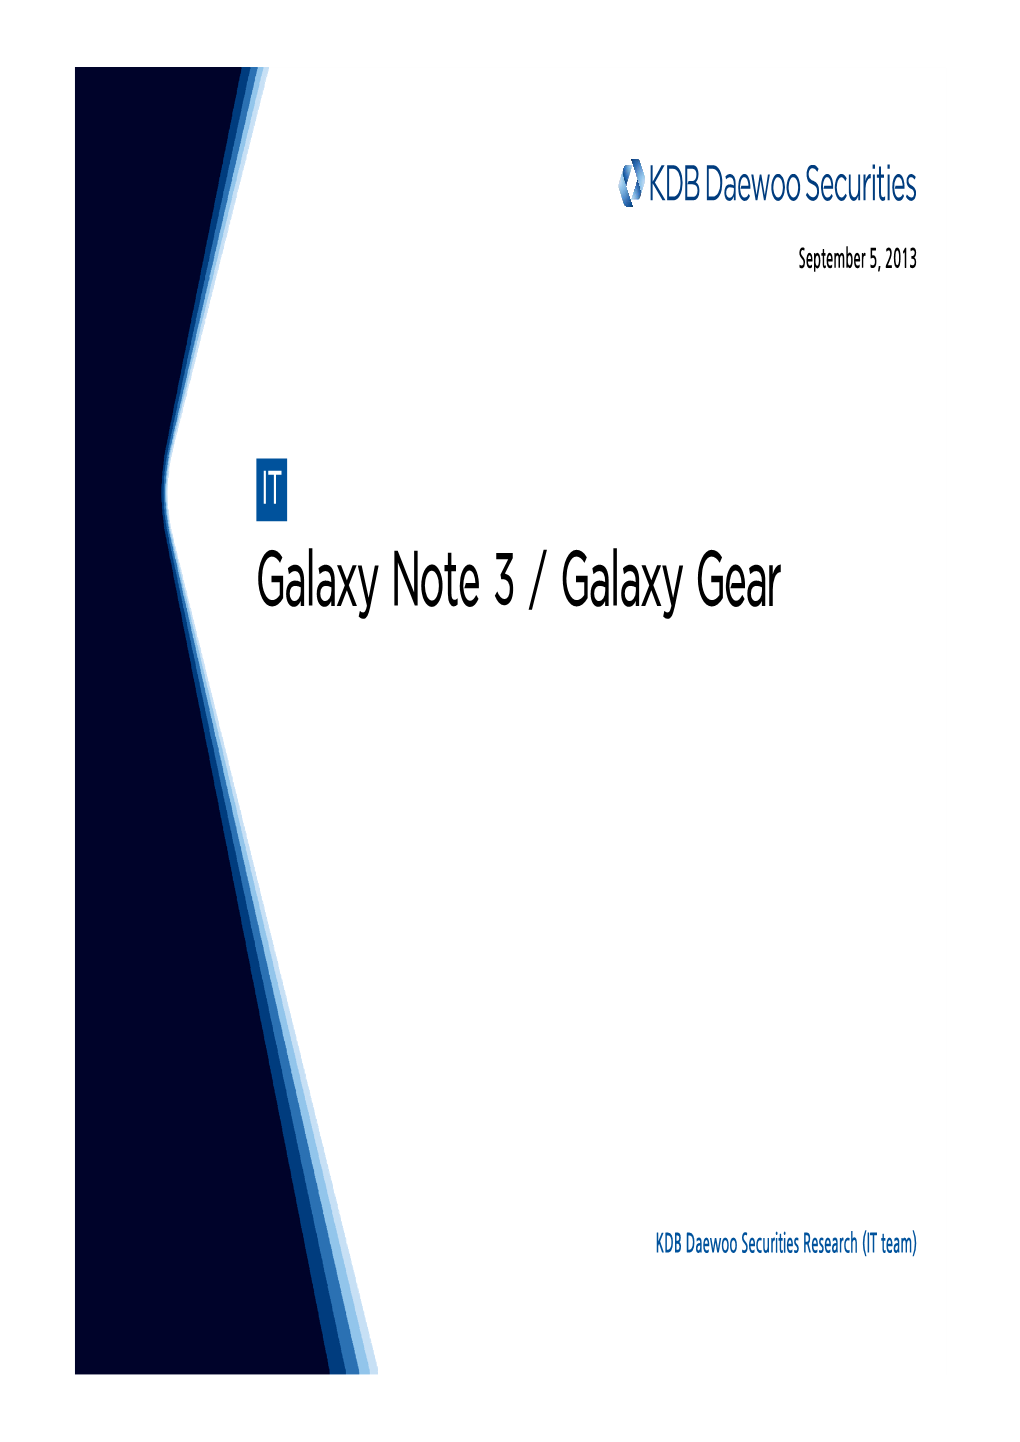 Galaxy Note 3 / Galaxy Gear